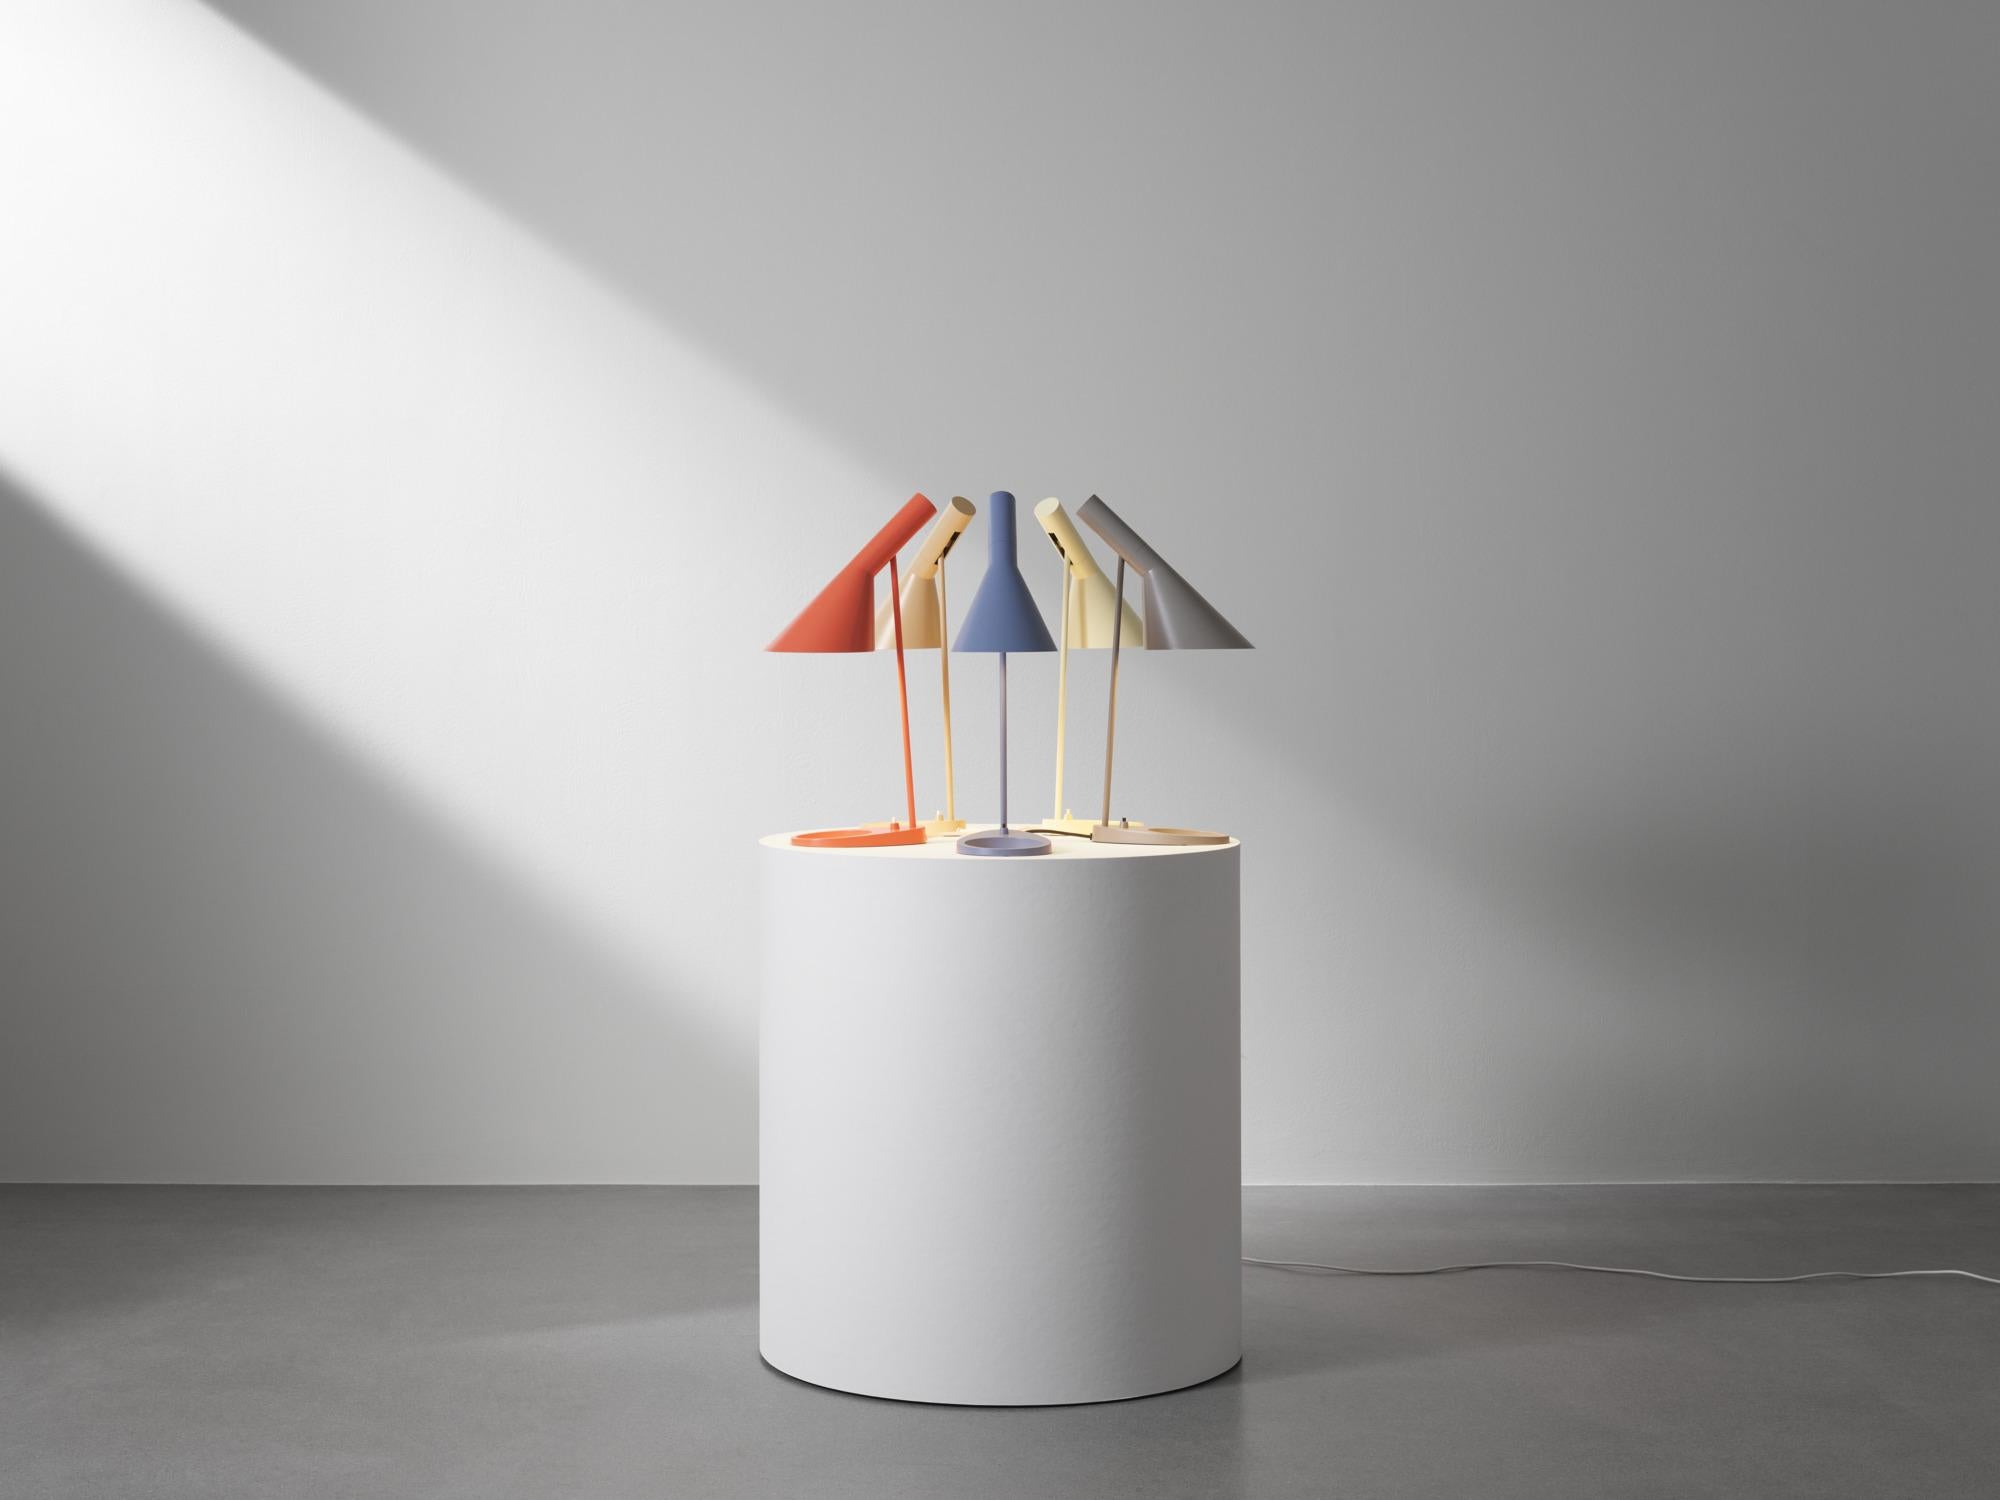 Lampe de table AJ d'Arne Jacobsen en pétrole pâle pour Louis Poulsen.

La série AJ faisait partie de la collection de luminaires que le célèbre designer danois Arne Jacobsen a créée pour le premier hôtel SAS Royal en 1957. Aujourd'hui, ses designs